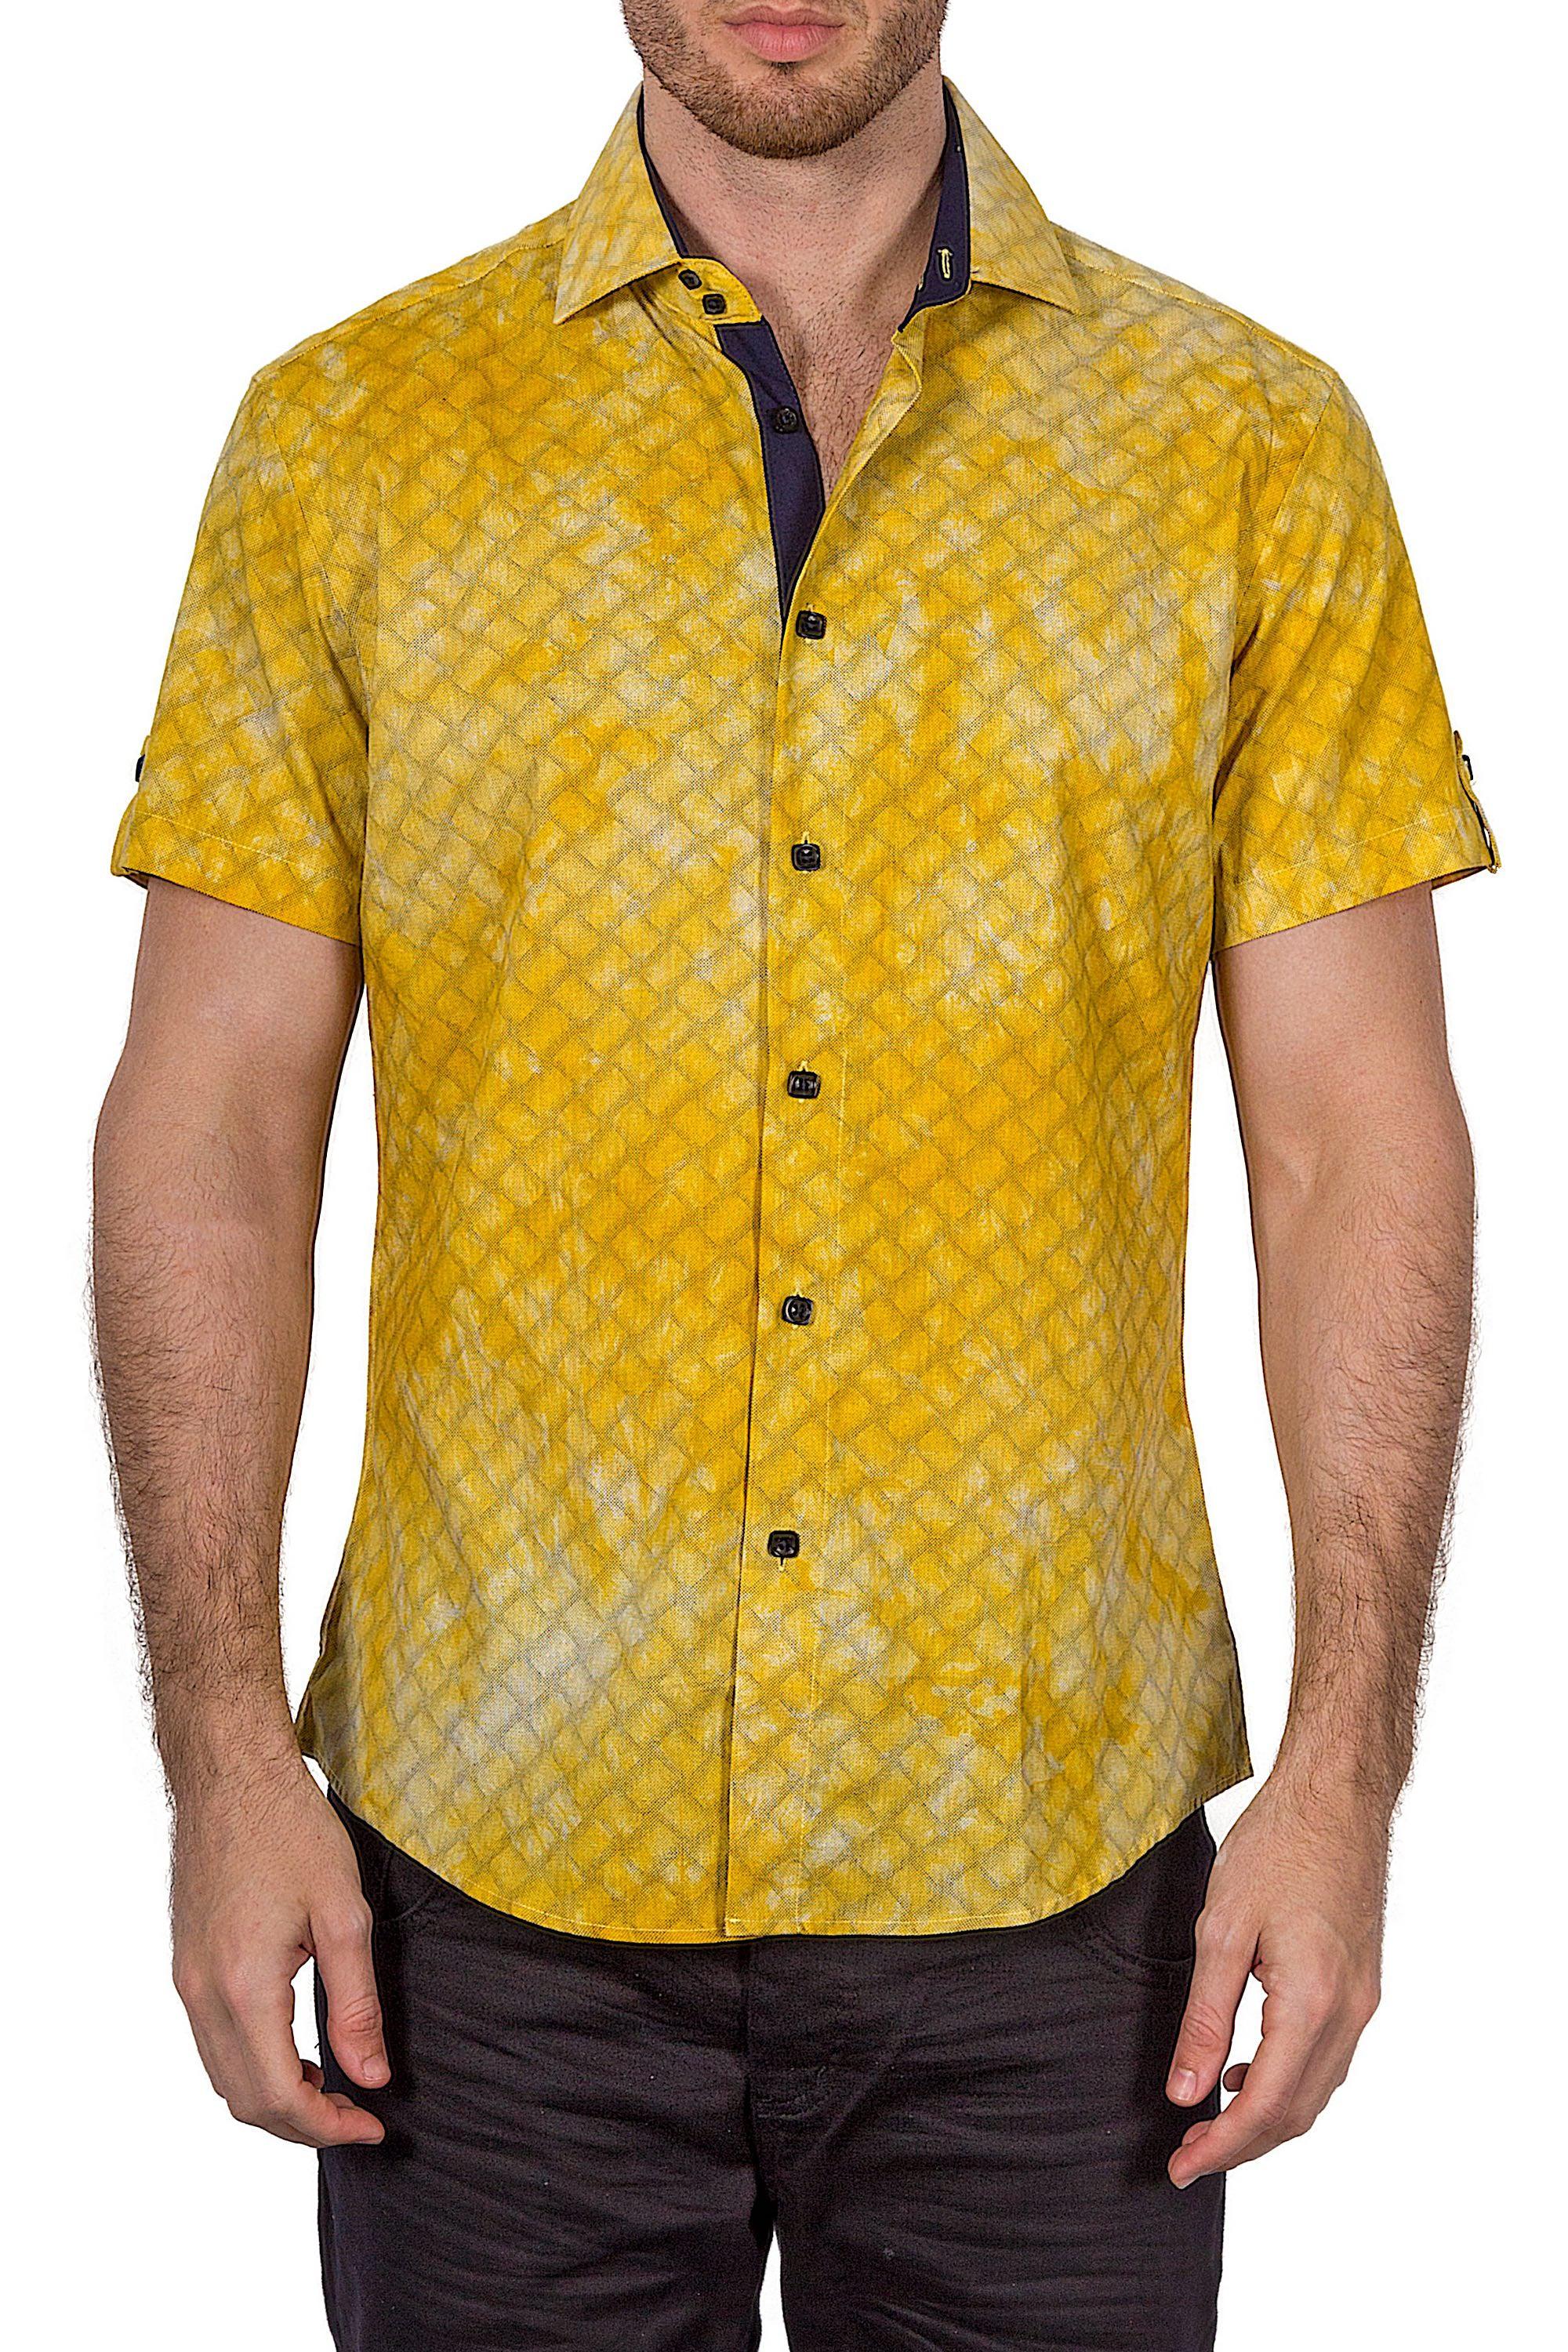 BESPOKE - Mens Yellow Short Sleeve Dress Shirt - Modern Fit